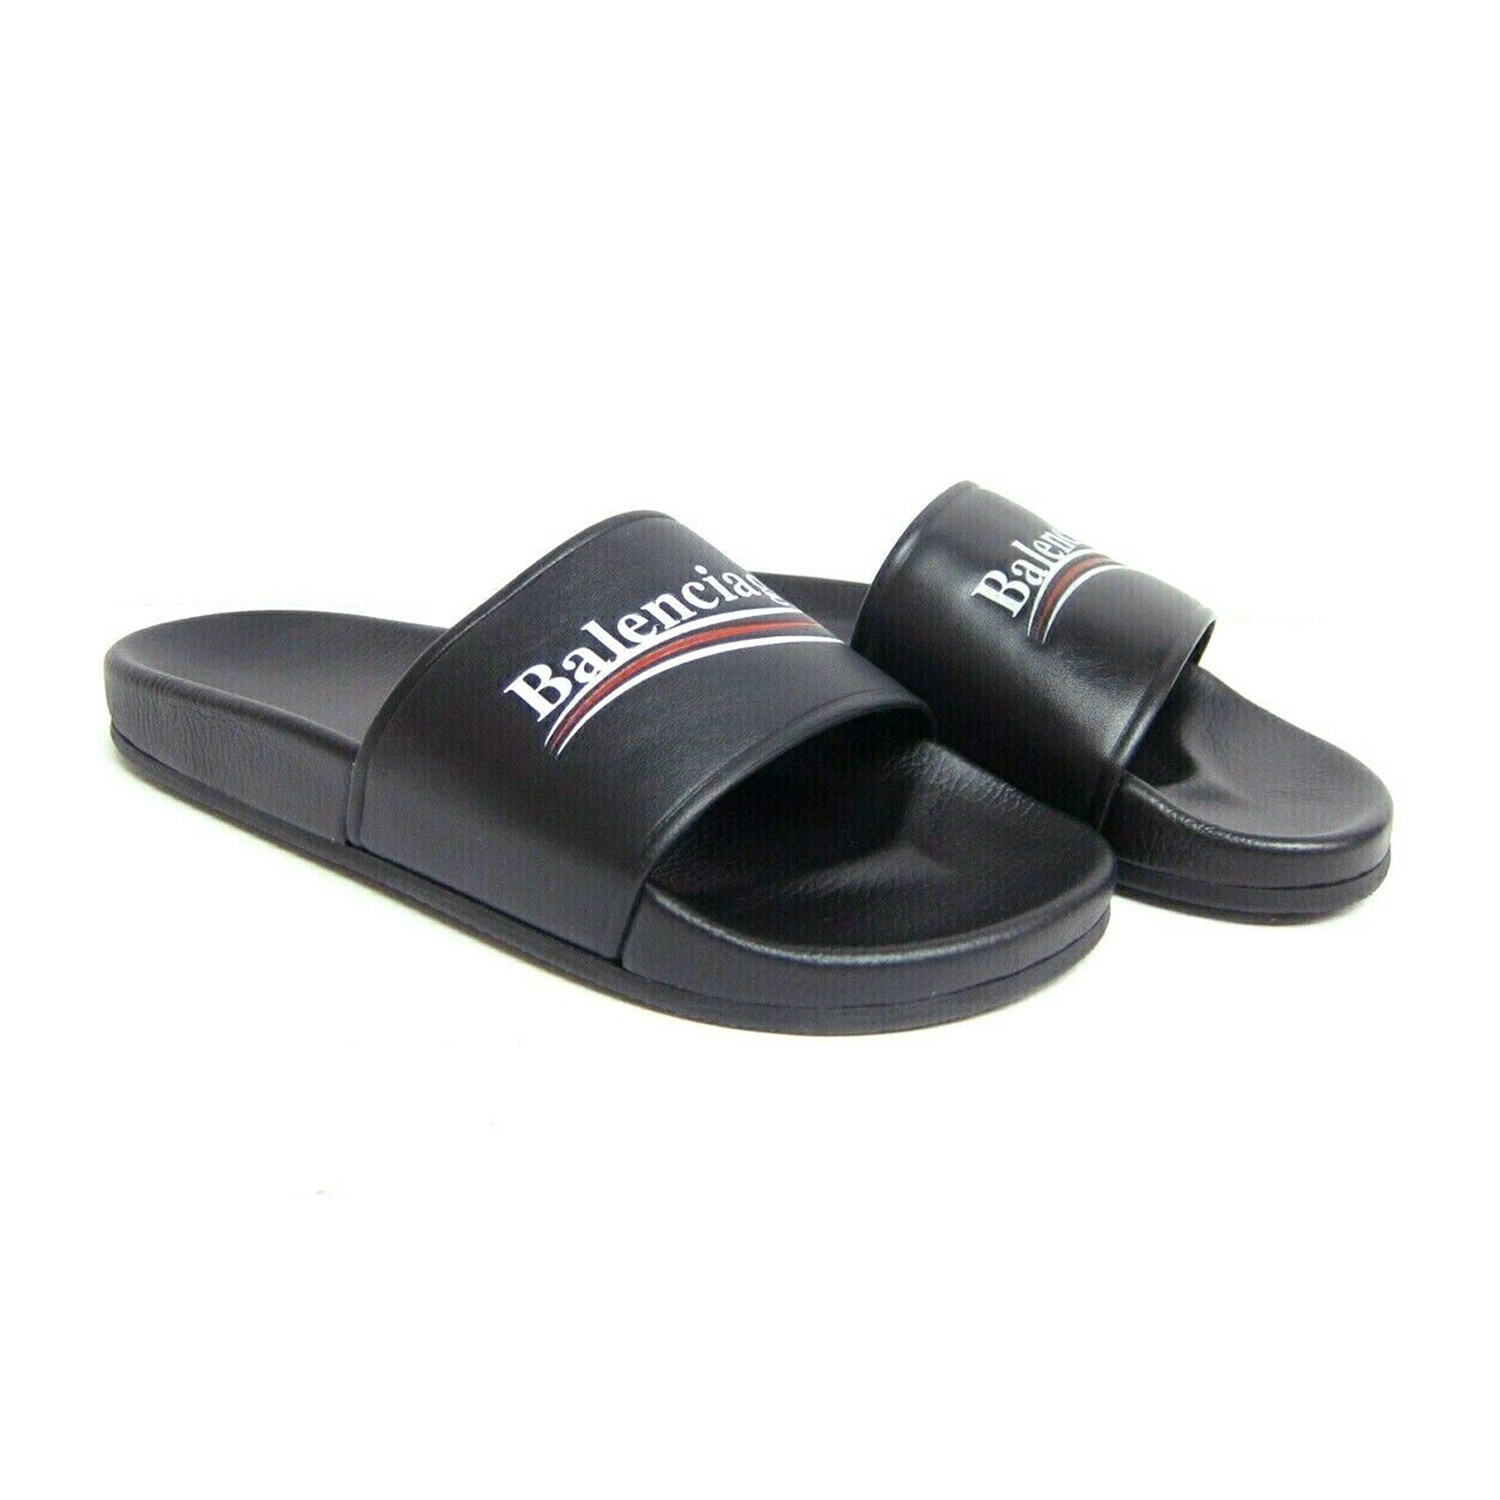 balenciaga logo campaign flat pool slide sandal